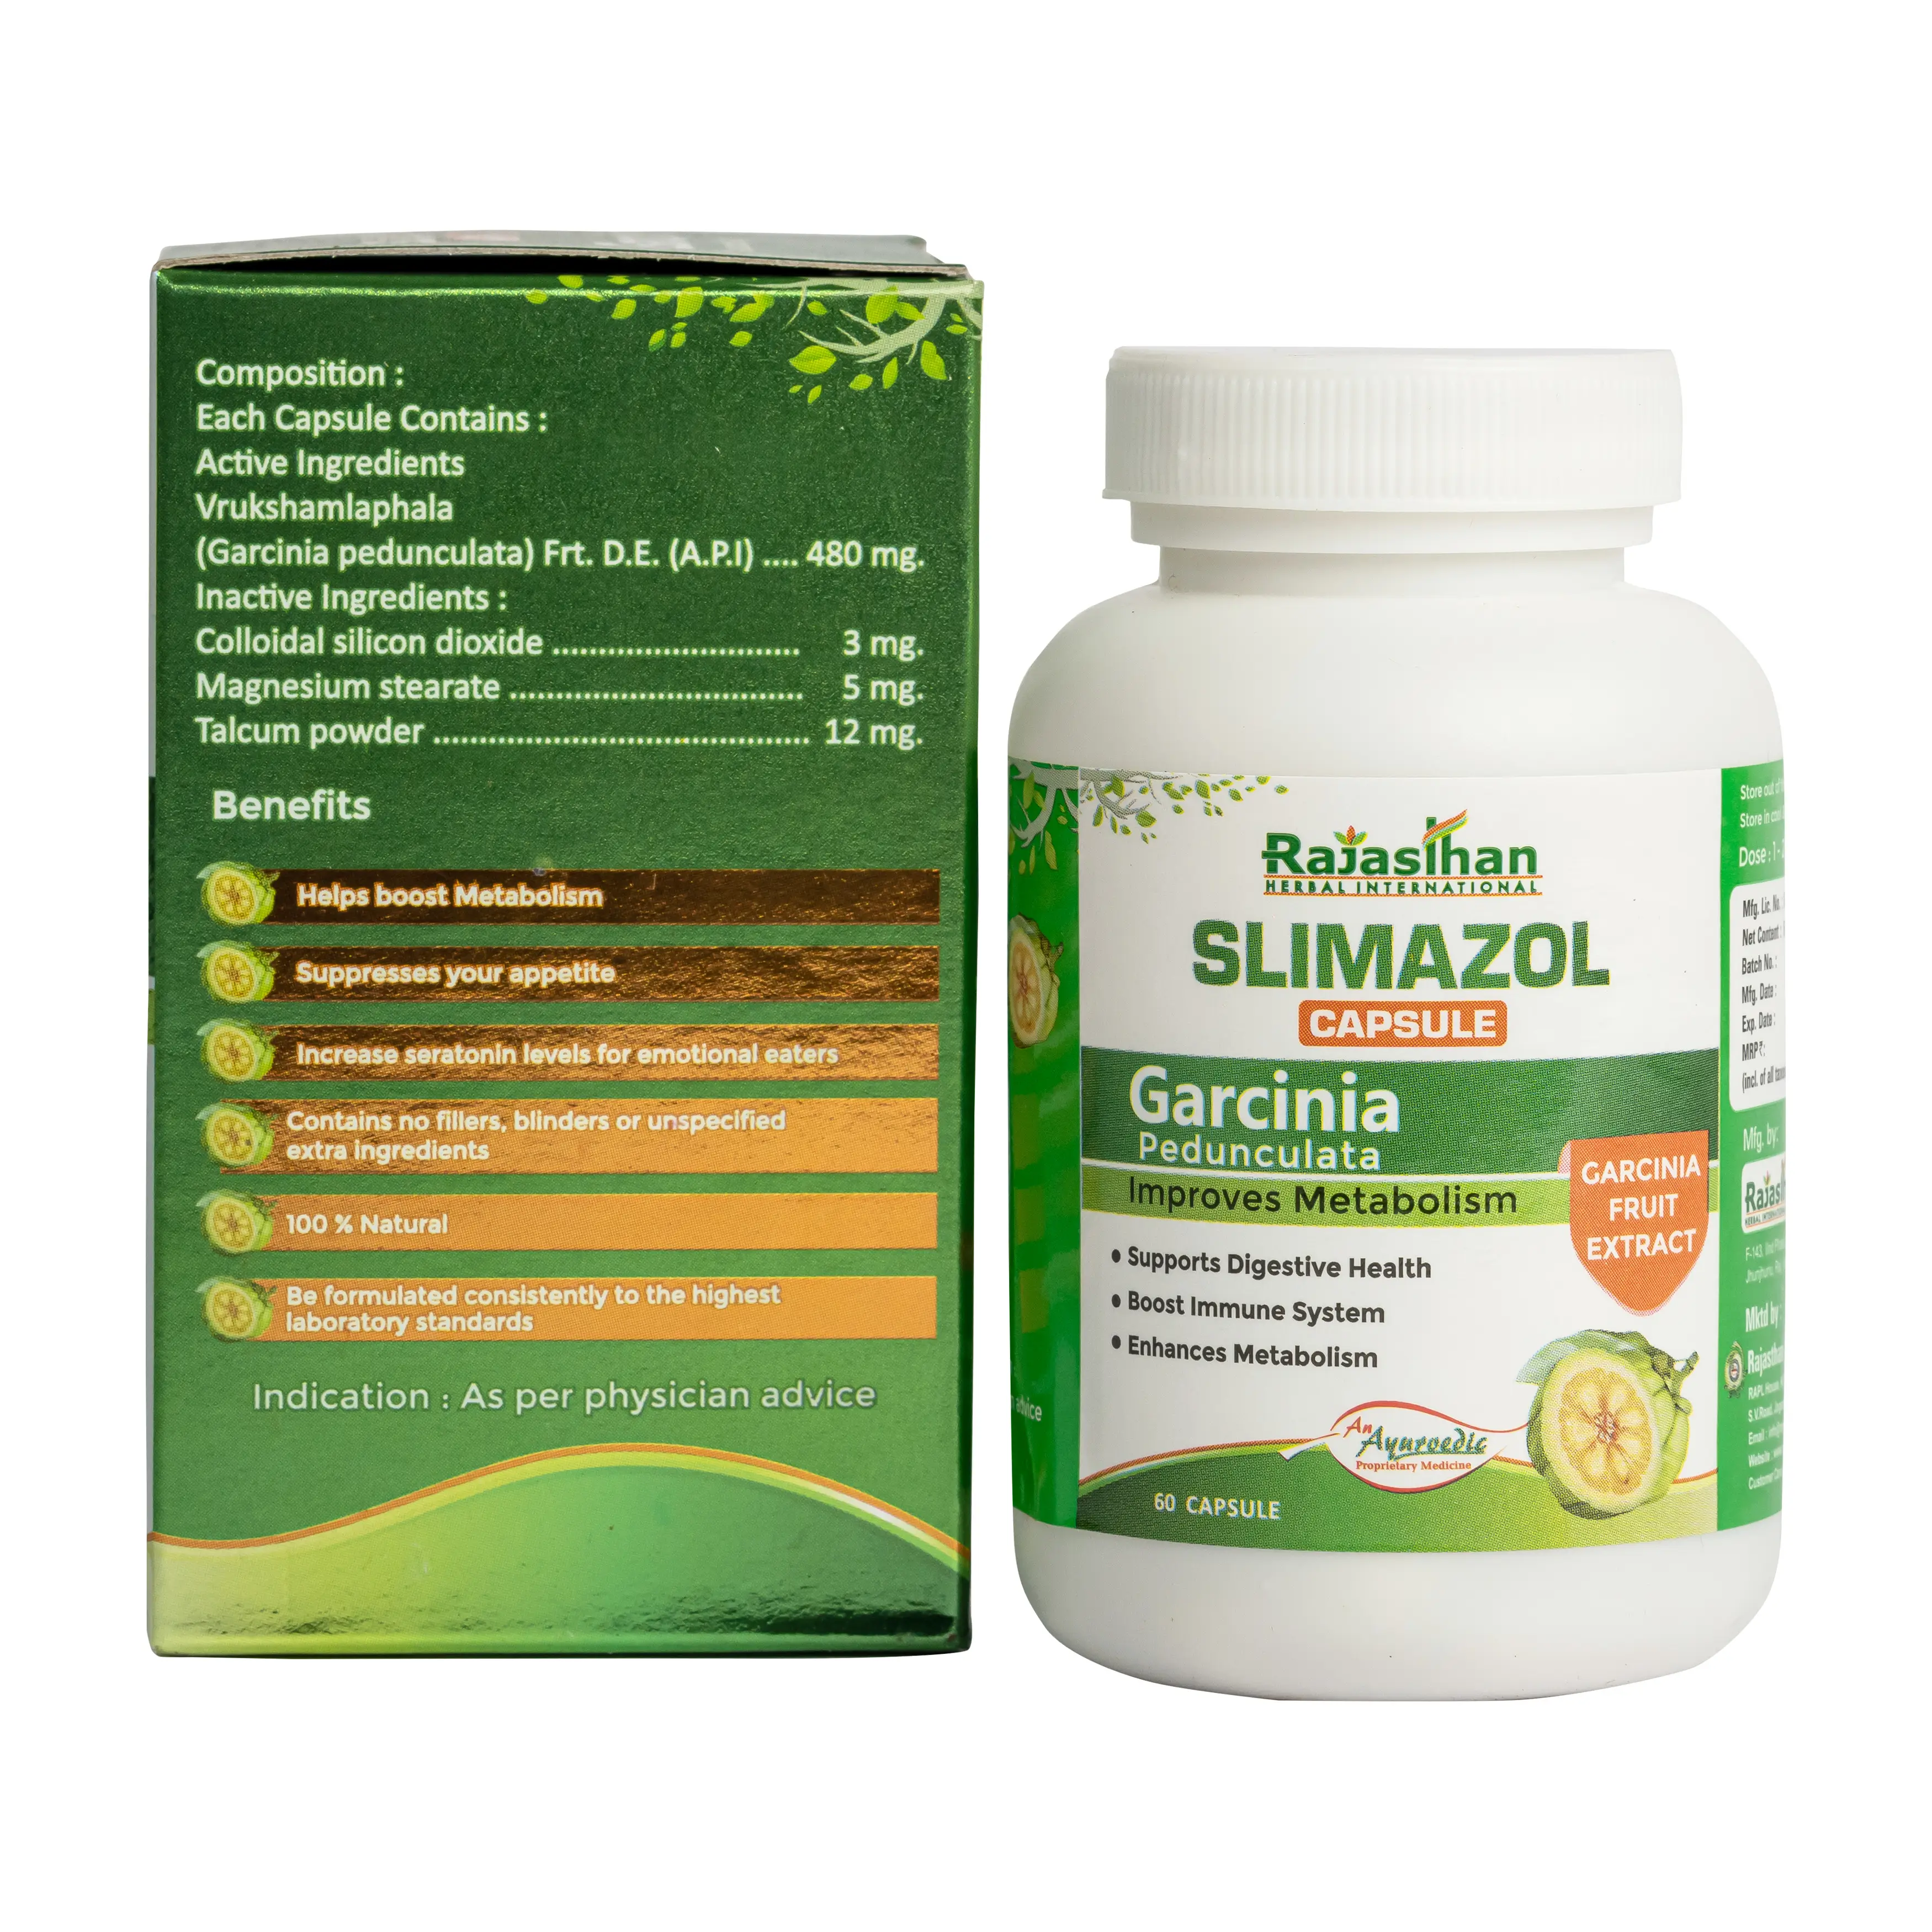 Slimazol Capsule 60 Ingredients